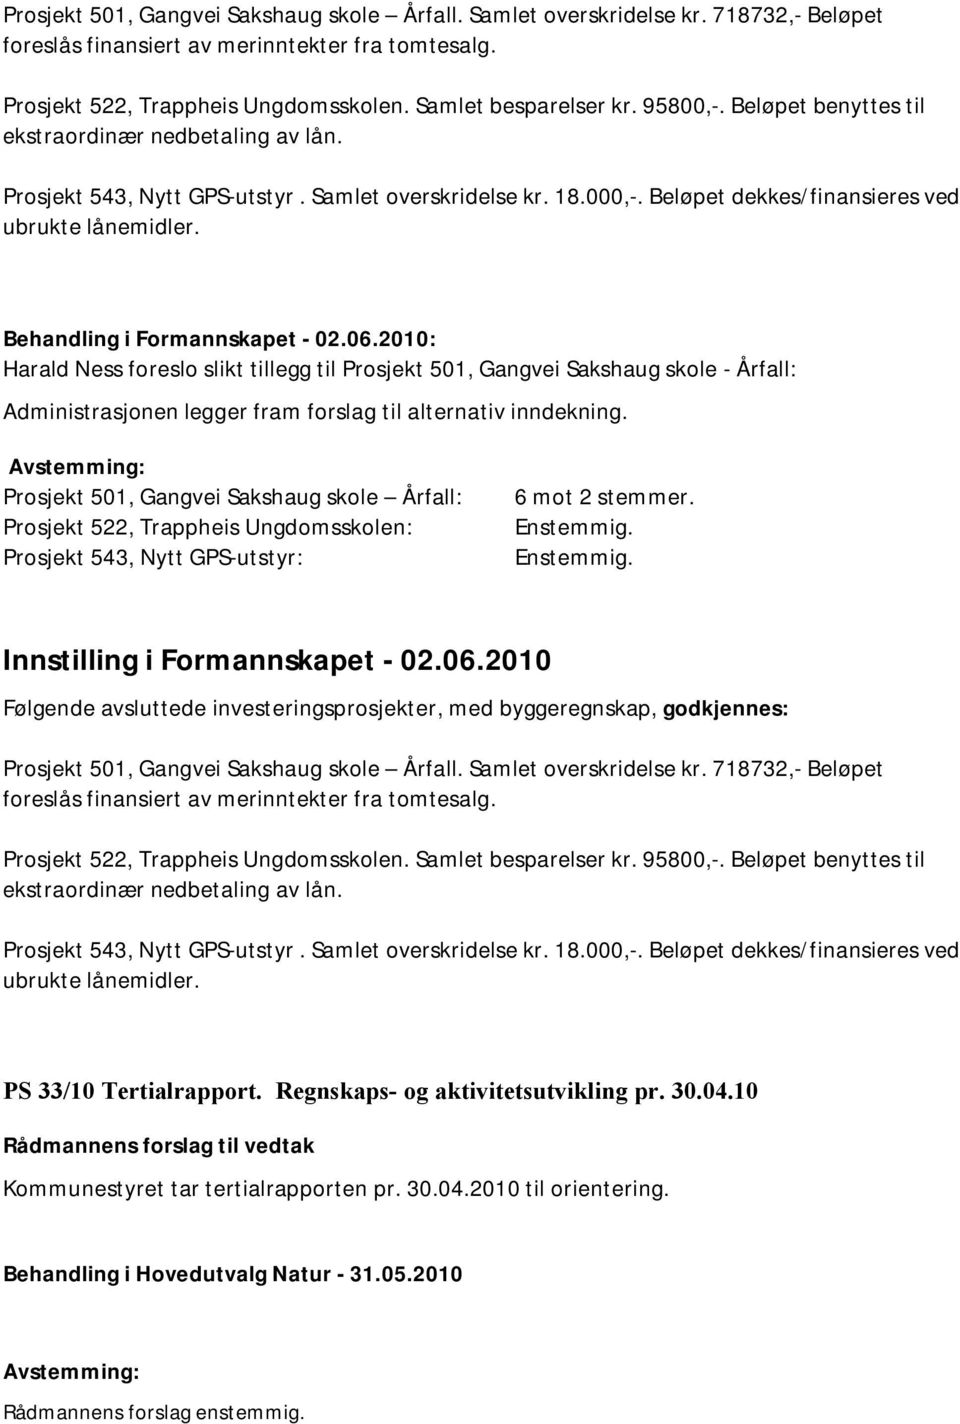 Behandling i Formannskapet - 02.06.2010: Harald Ness foreslo slikt tillegg til Prosjekt 501, Gangvei Sakshaug skole - Årfall: Administrasjonen legger fram forslag til alternativ inndekning.